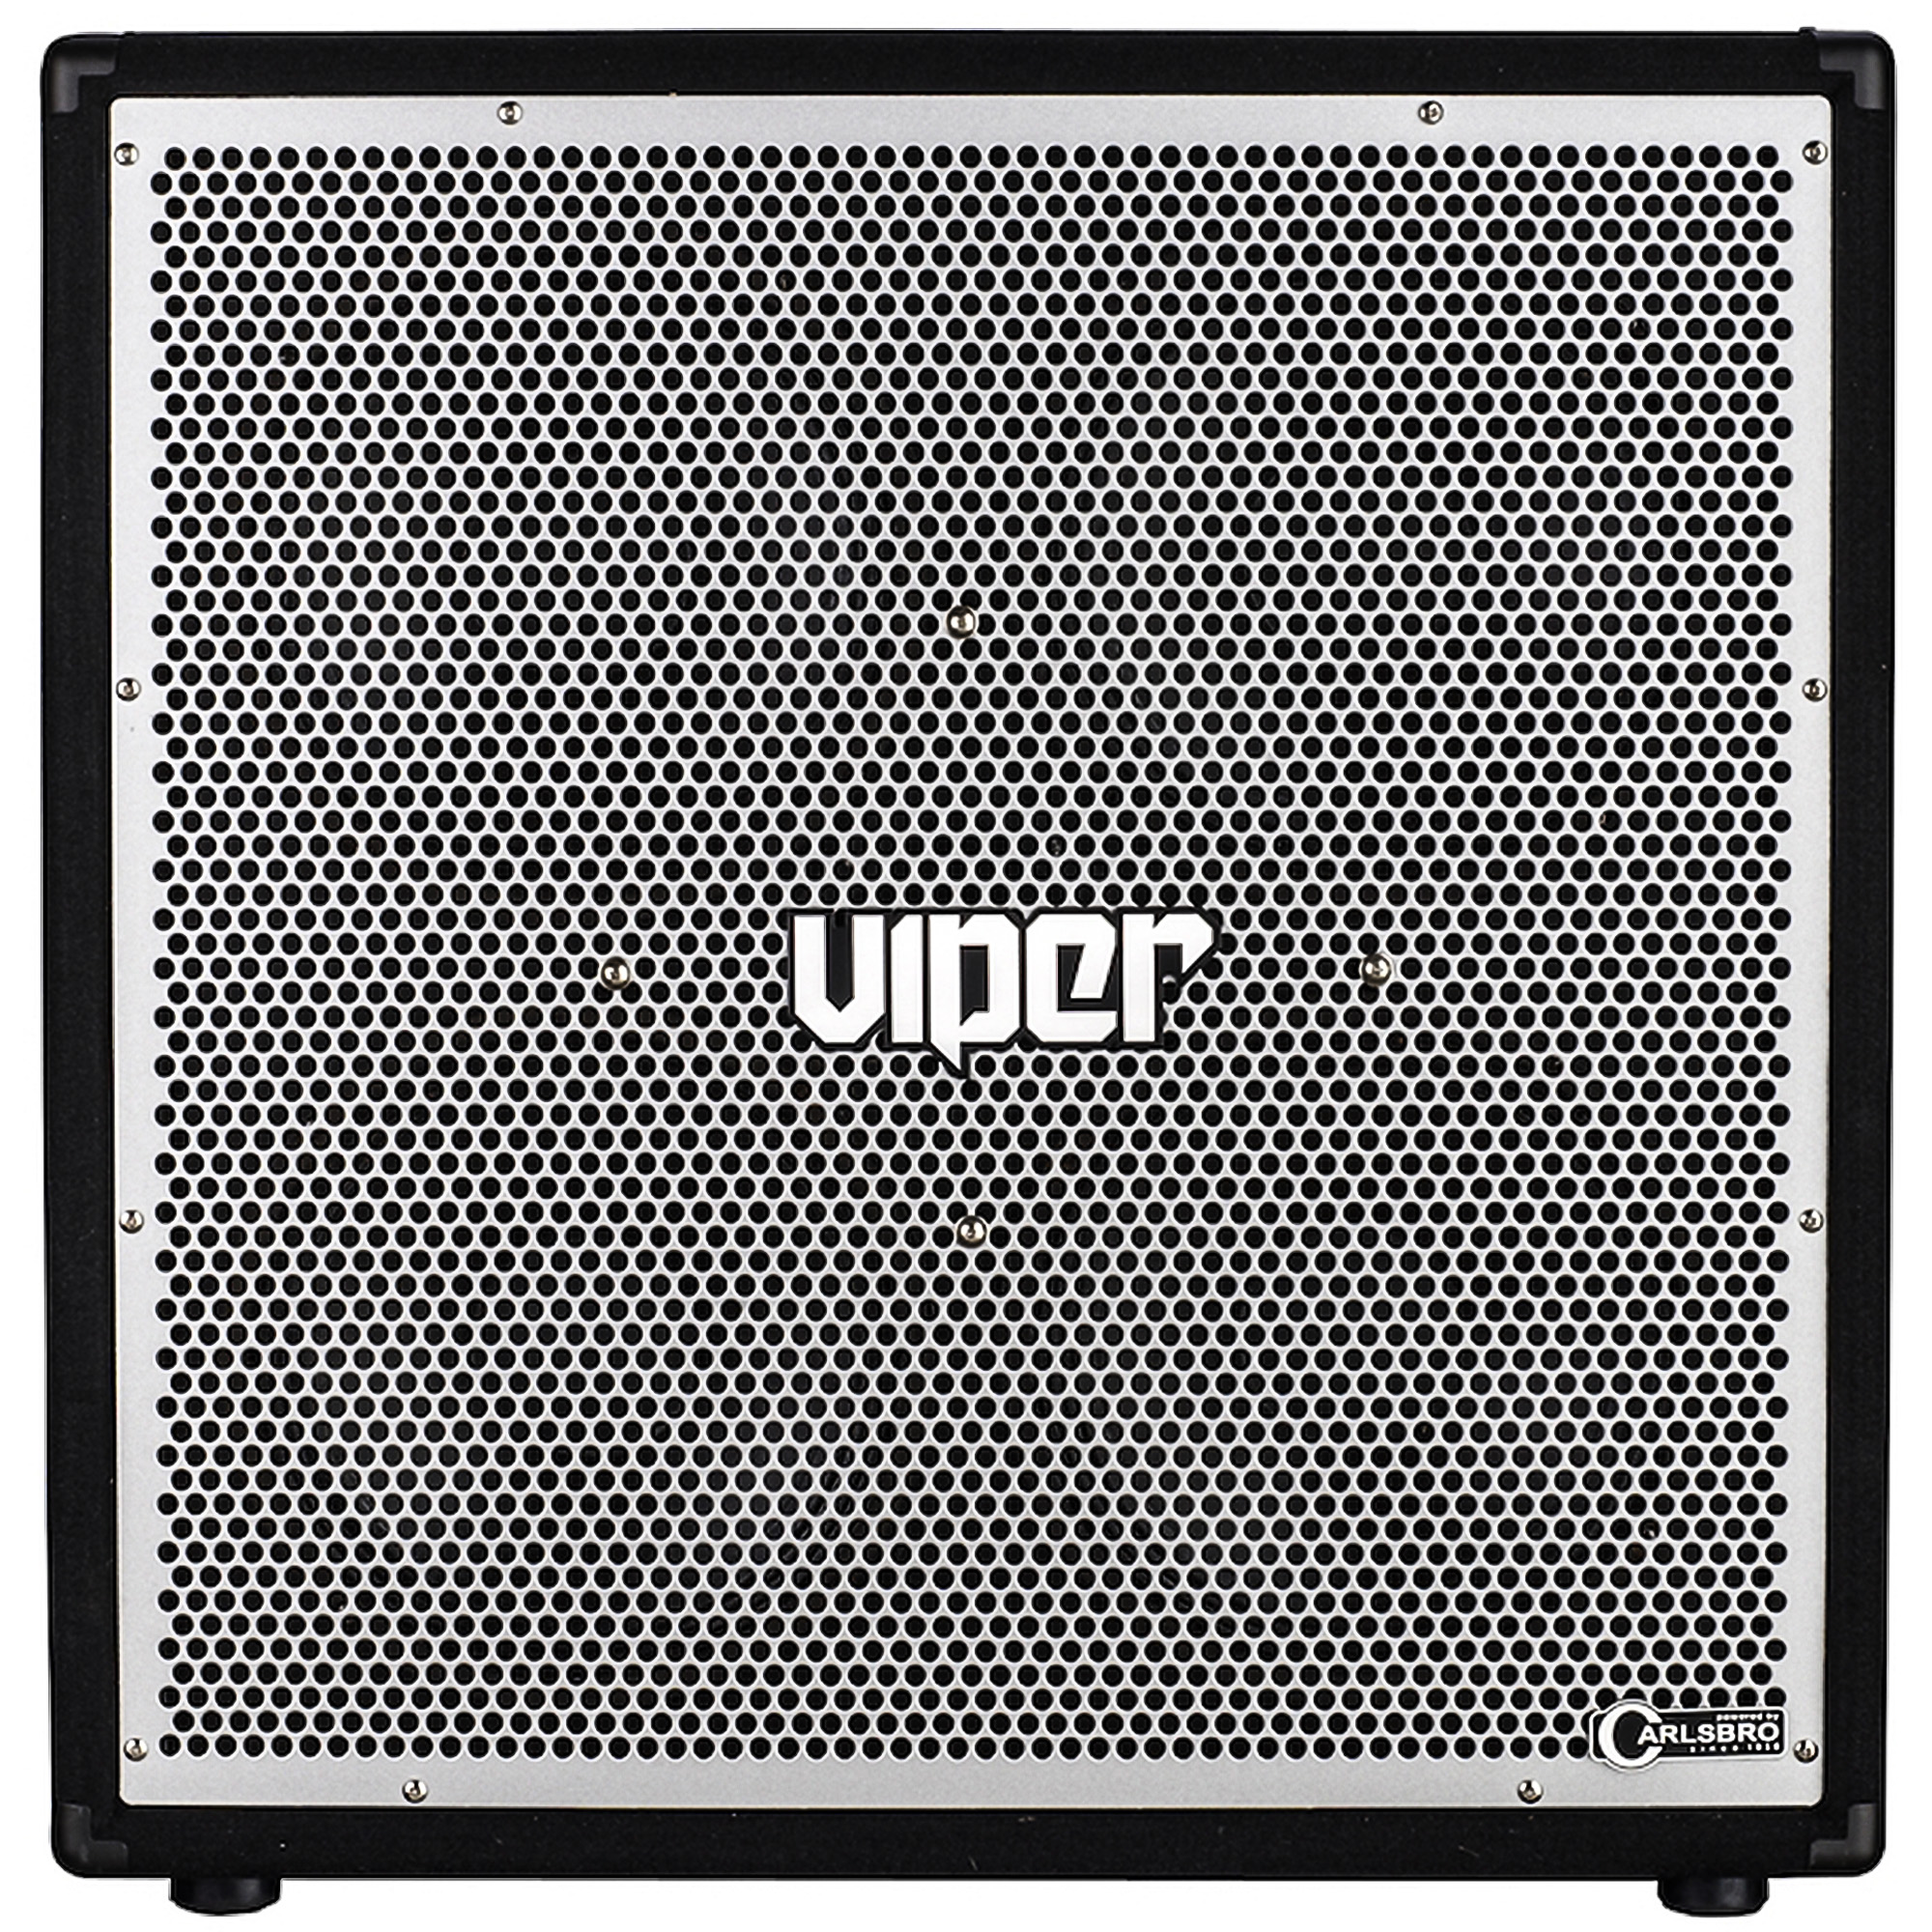 CARLSBRO VIPER410 4x10 Bass Speaker Cabinet (400 Watts)